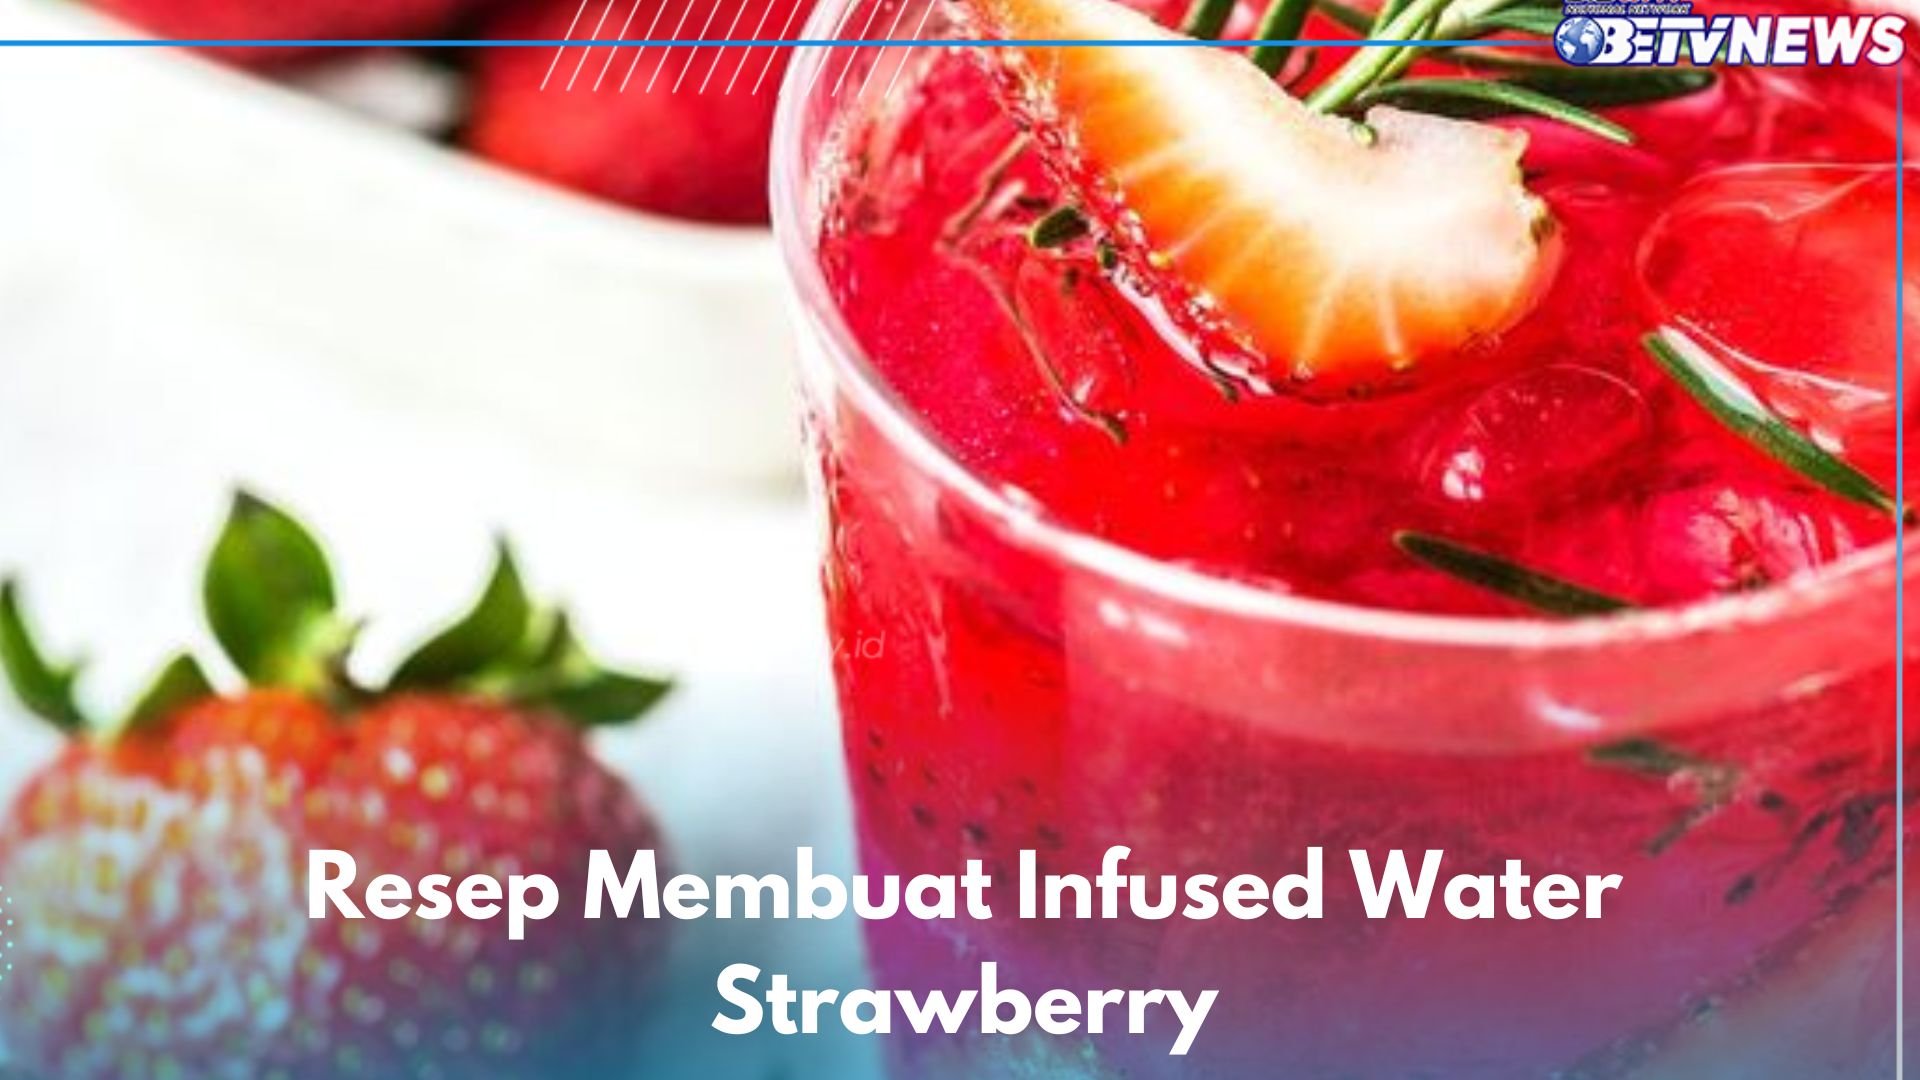 5 Minuman Sehat Ini Wajib Dicoba, Cek Resep Membuat Infused Water Strawberry di Sini